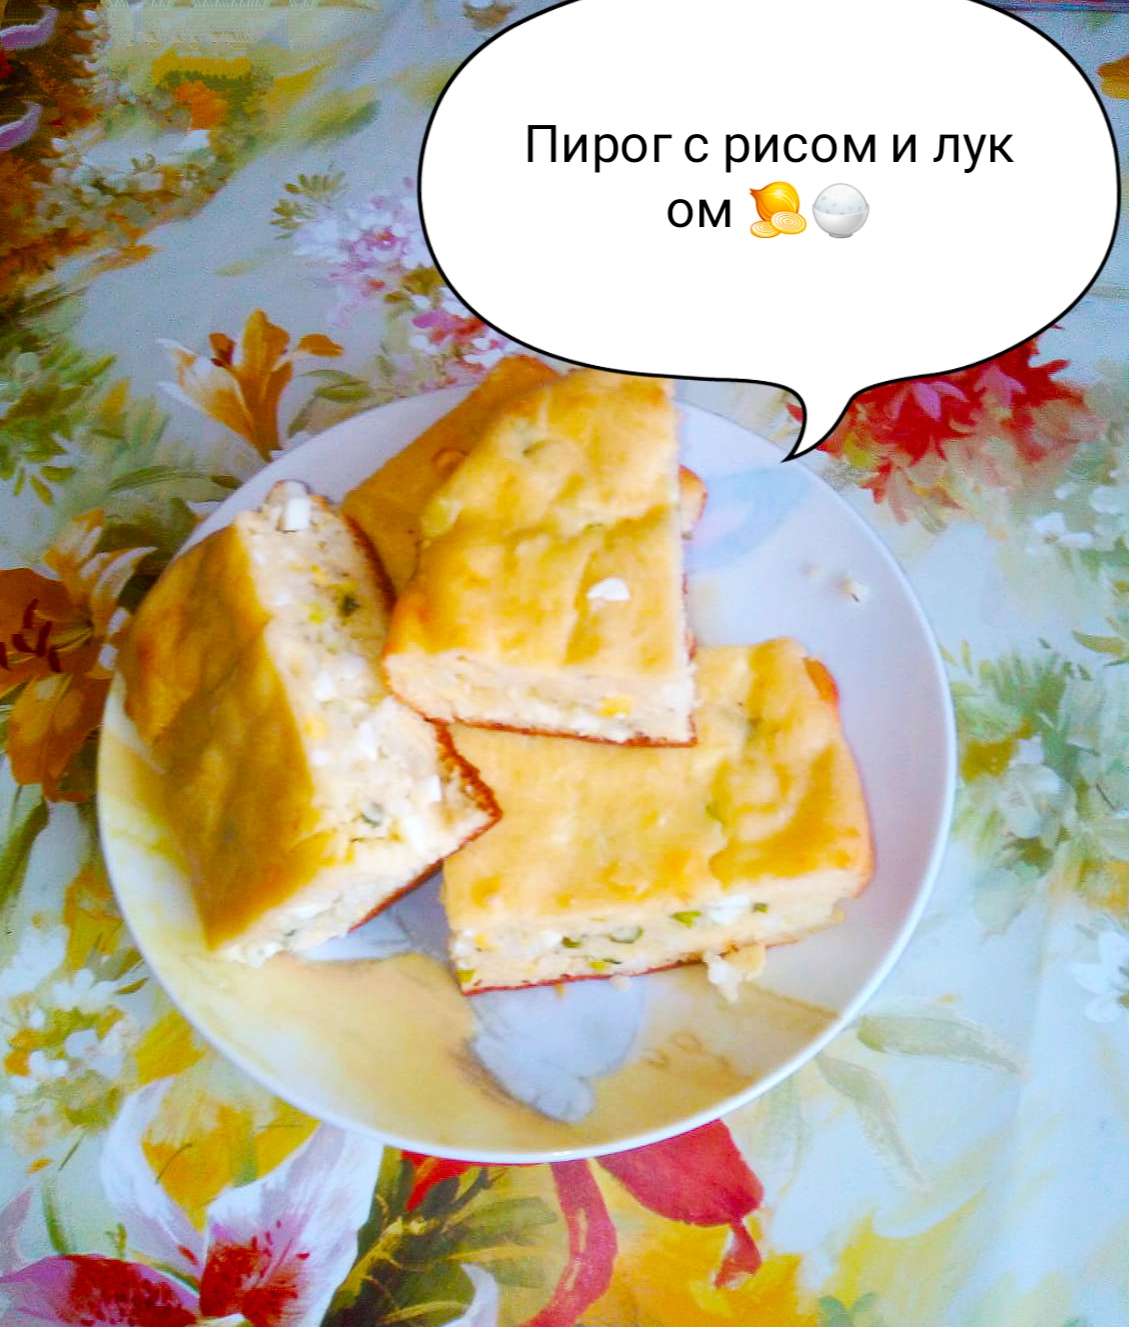 Сладкий балиш — Татарская кухня